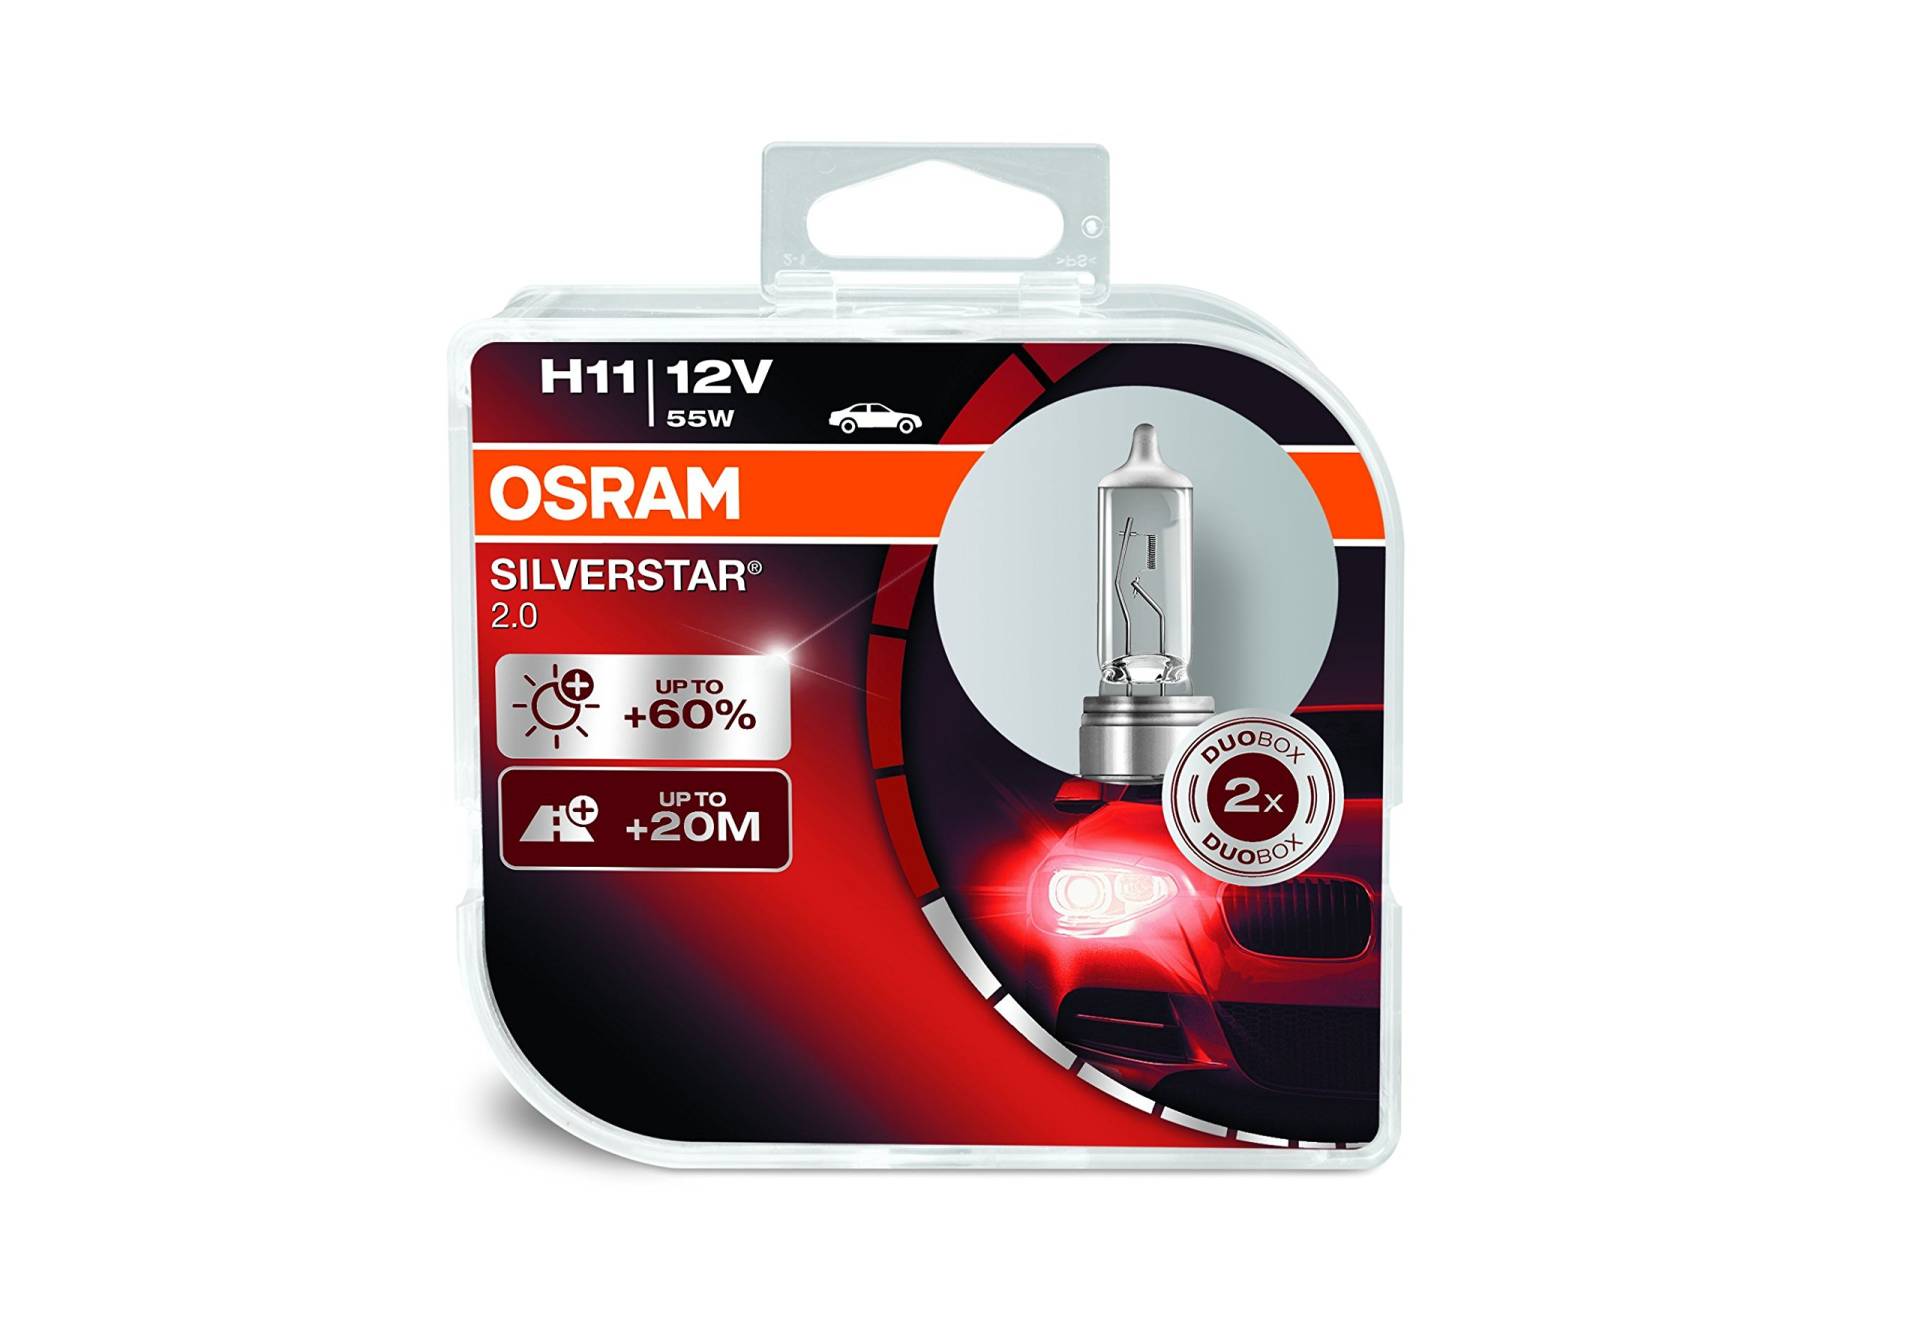 OSRAM SILVERSTAR 2.0 H11 Halogen Scheinwerferlampe 64211SV2-HCB +60% mehr Licht im 2er-Set von Osram